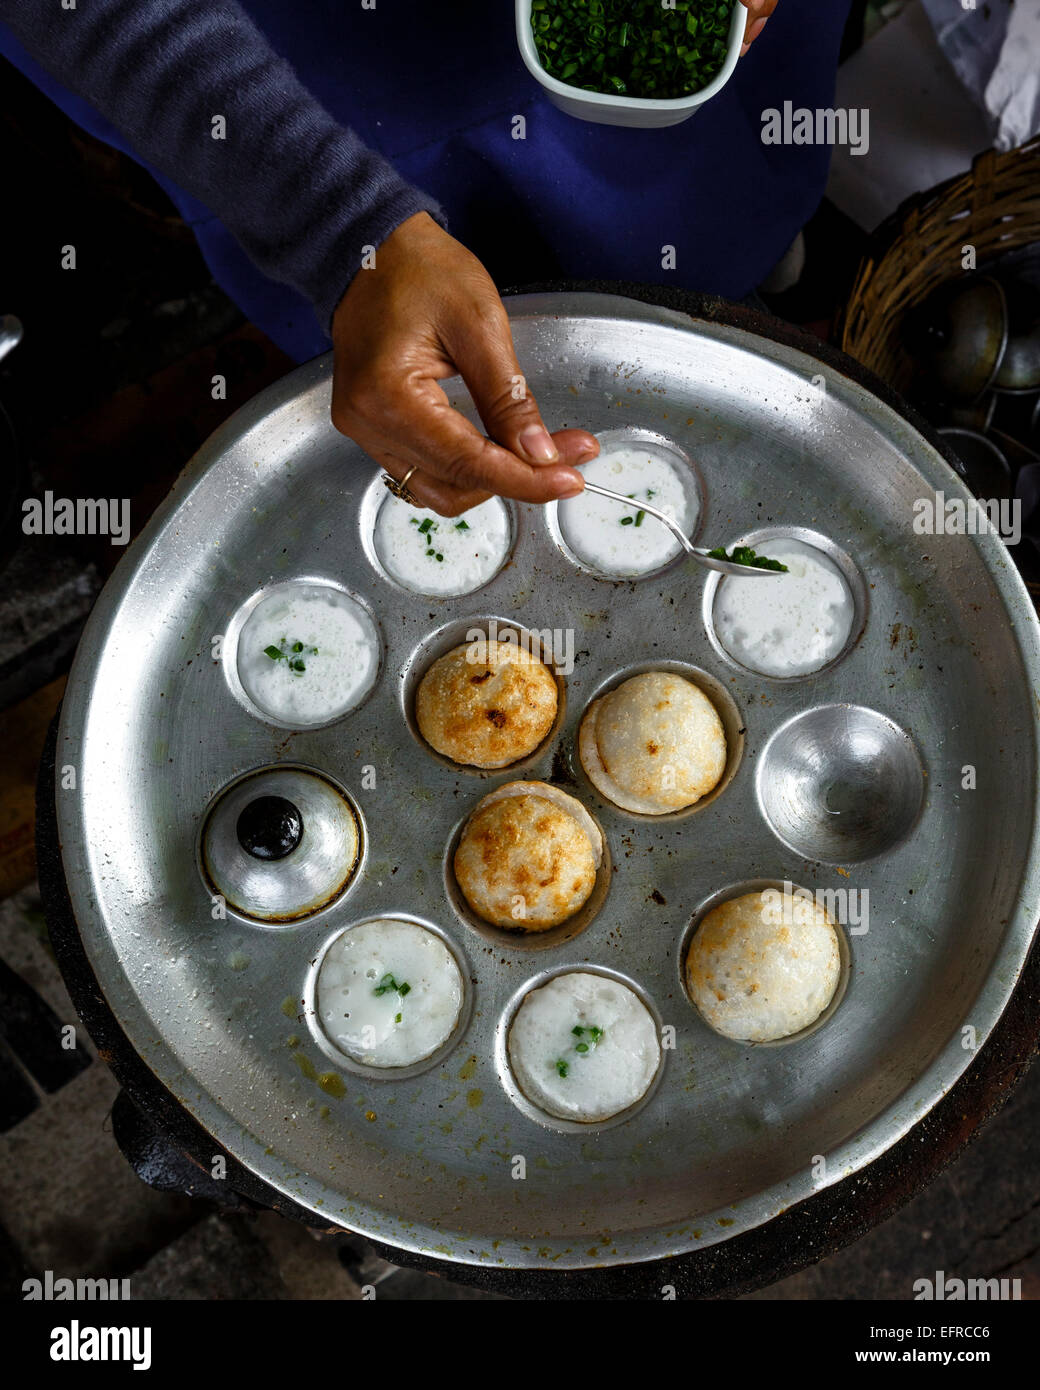 Tortitas de coco dulce hecho con harina de arroz y leche de coco, frito en un molde de fundición, en Vientiane, Laos. Foto de stock